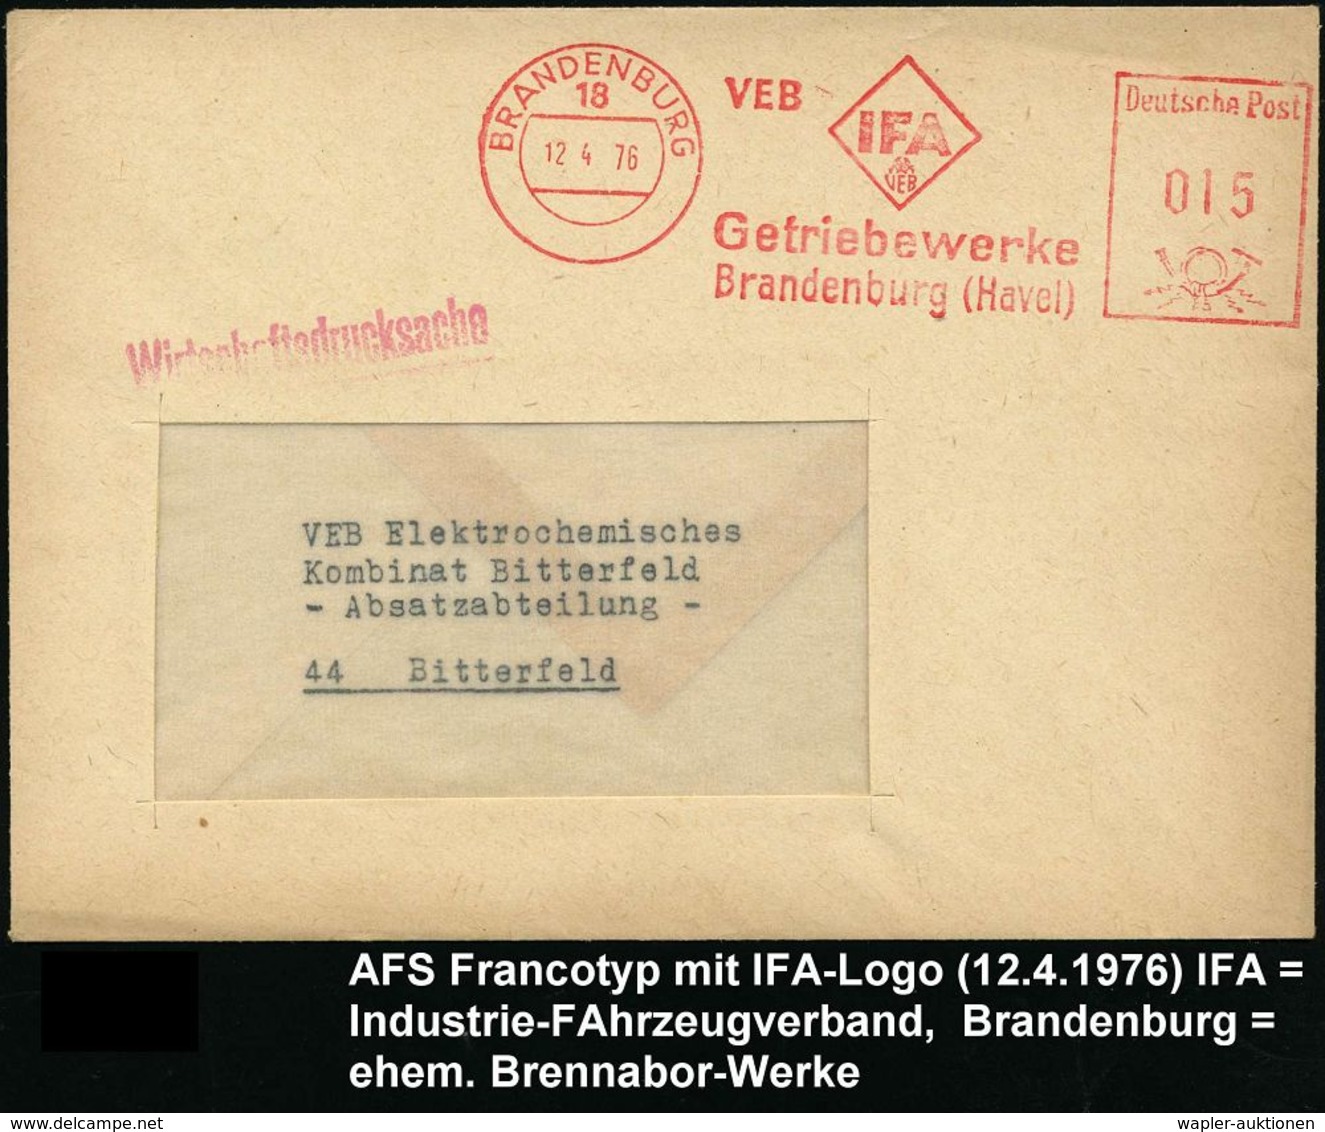 AUTOHERSTELLER D.D.R. : 18 BRANDENBURG/ VEB IFA/ VEB/ Getriebewerke 1976 (12.4.) AFS (Logo) = Ex Brennabor-Werke = Trakt - Voitures